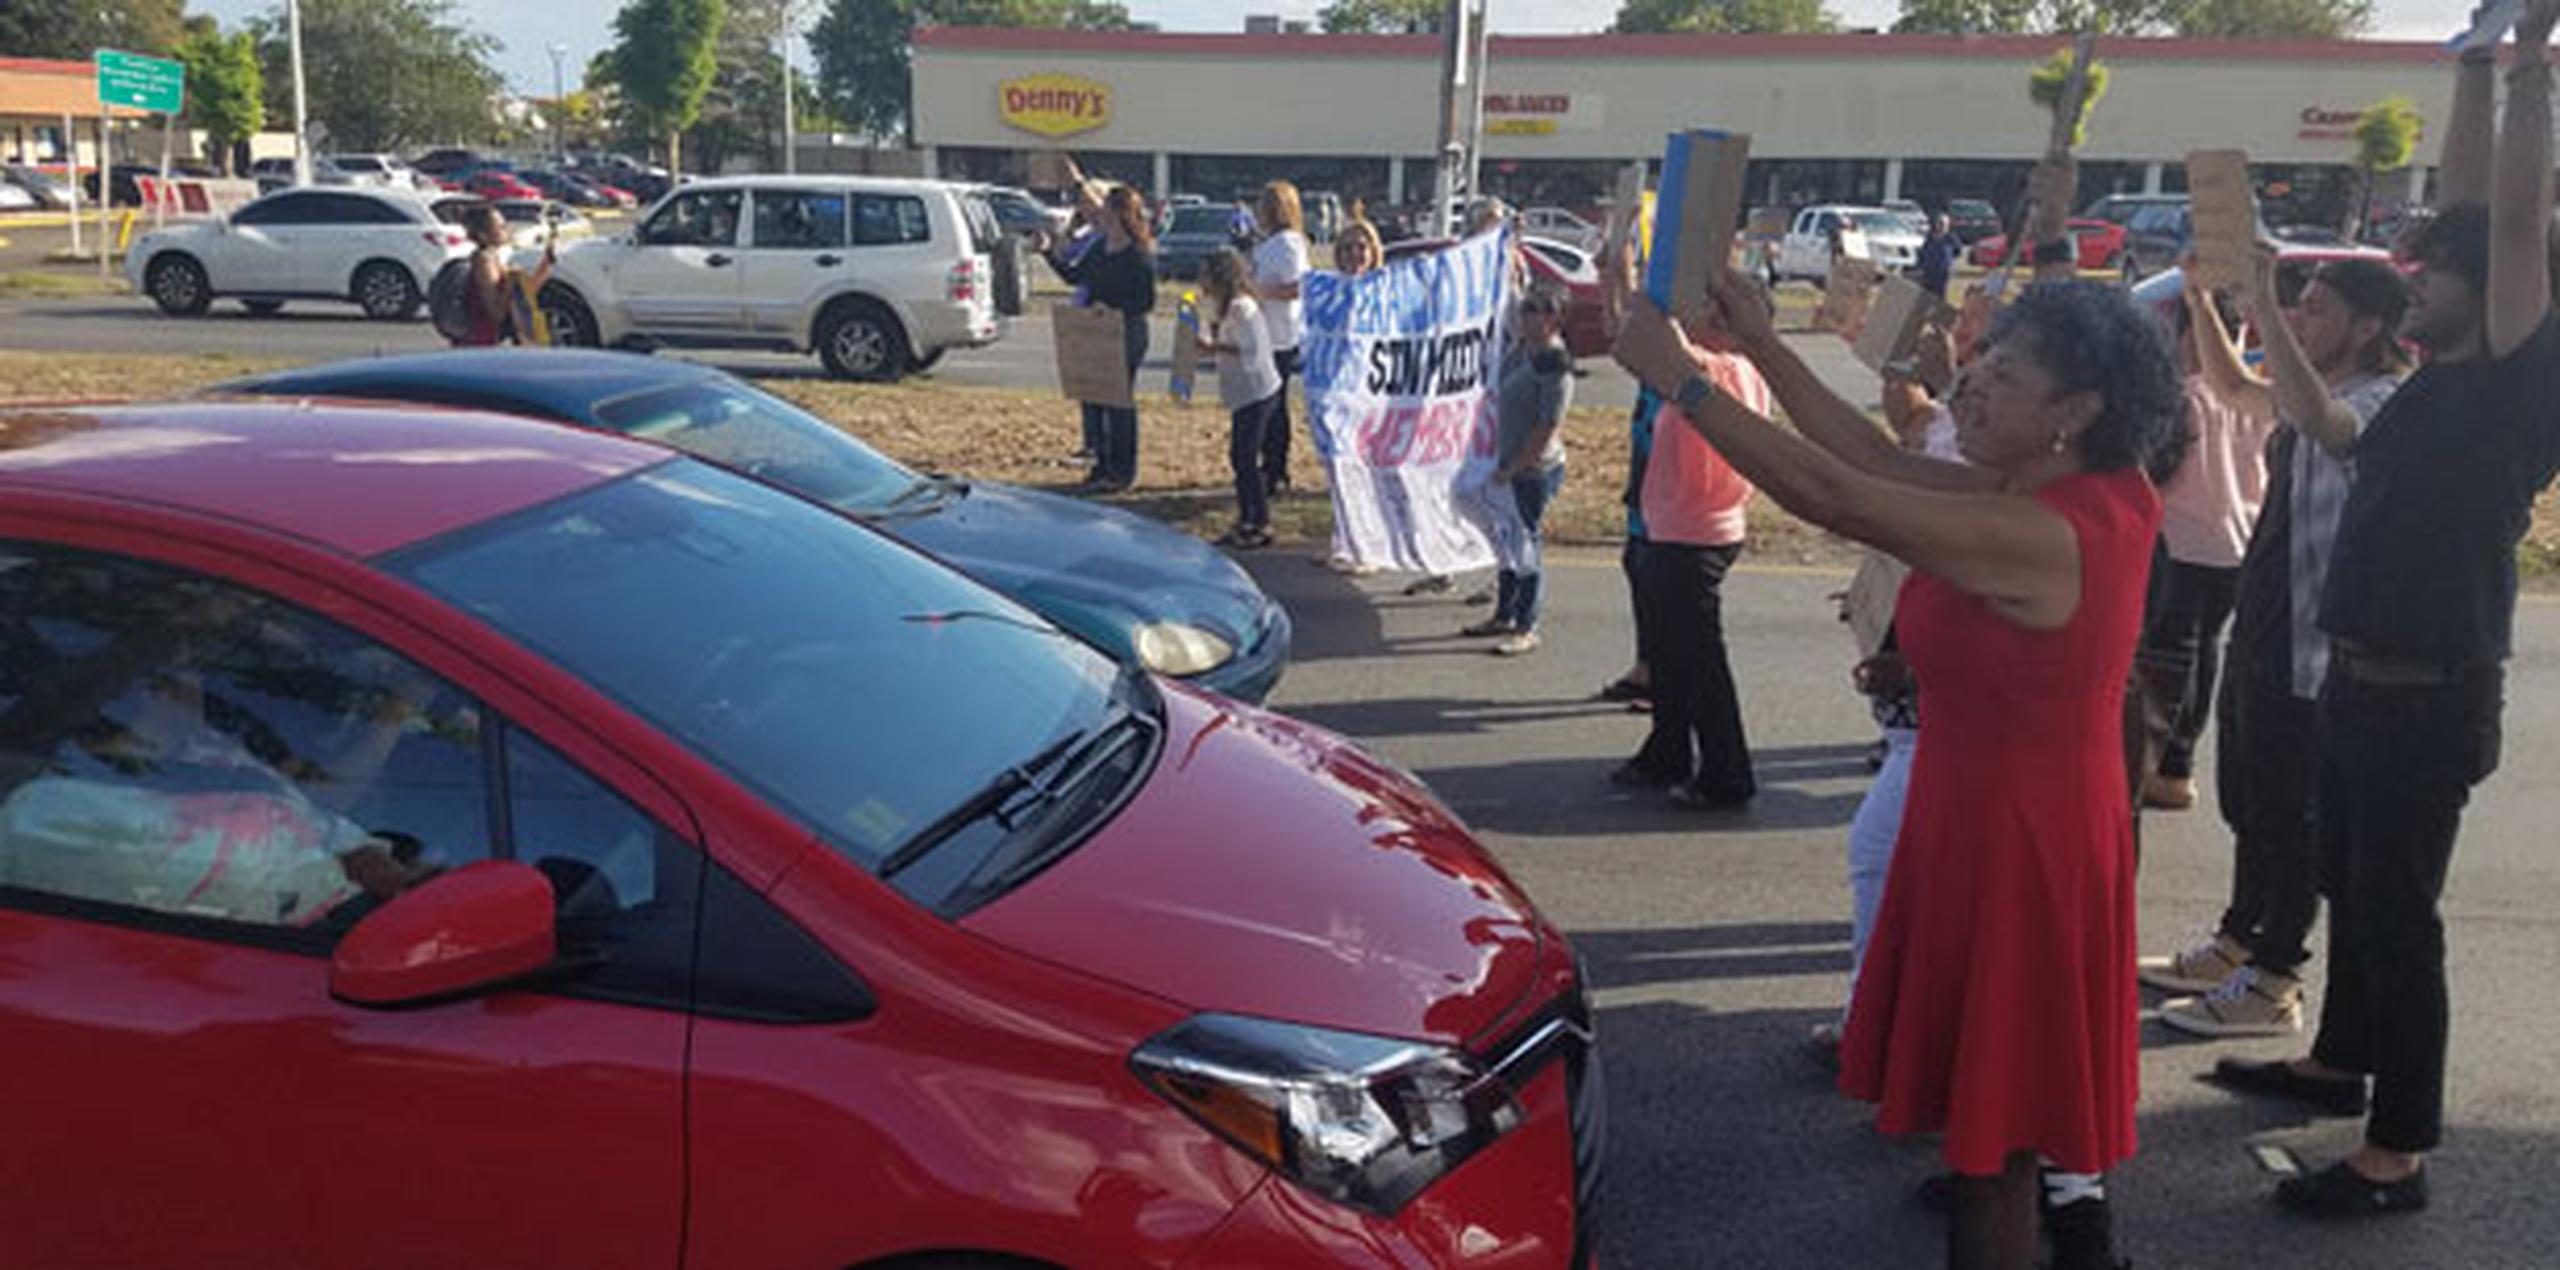 El conductor de un Toyota Yaris rojo casi atropella a tres manifestantes al intentar proseguir la marcha. (michelle.estrada@gfrmedia.com)